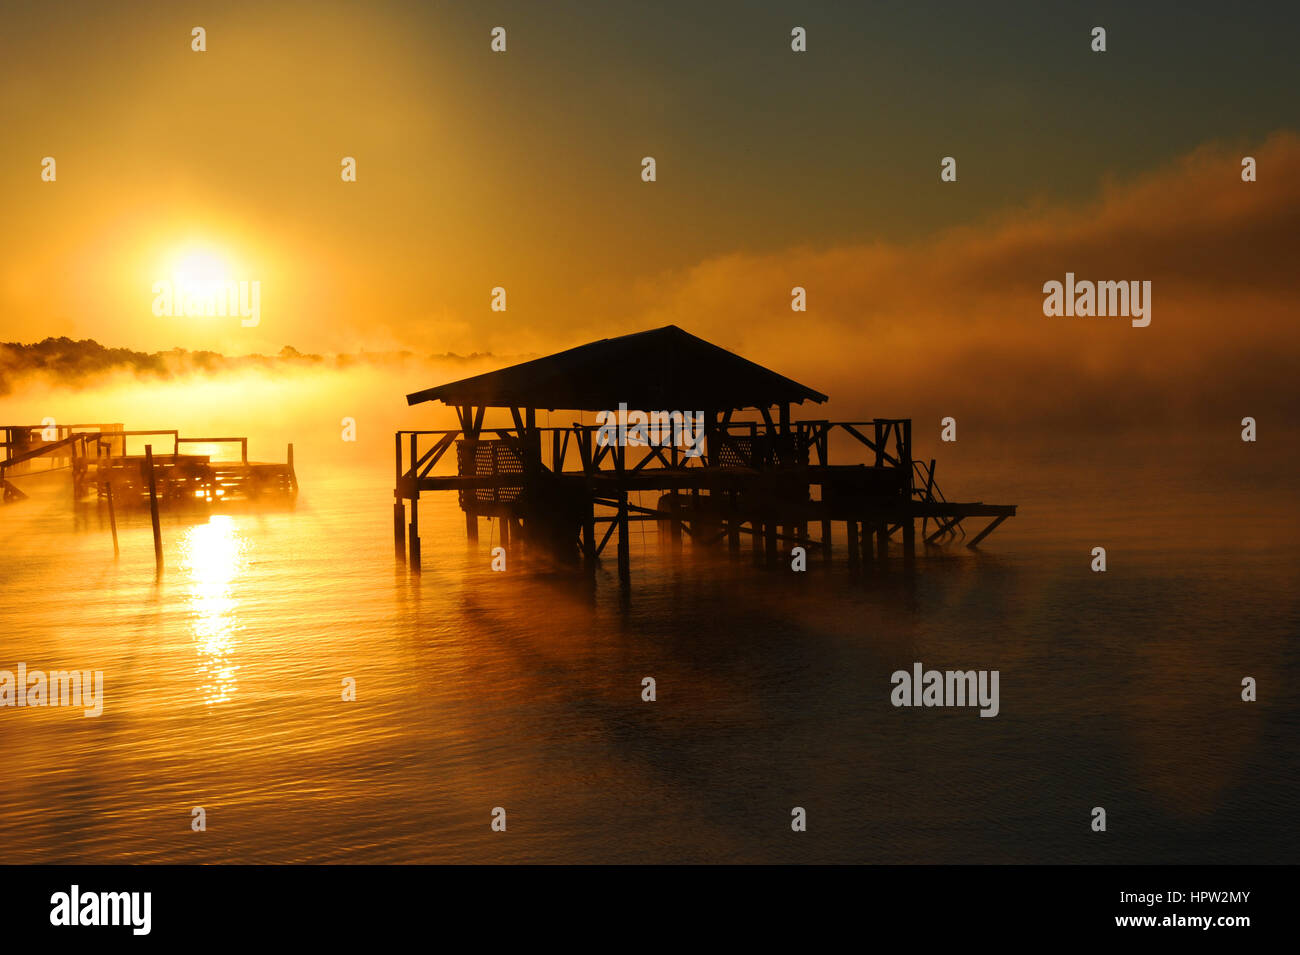 Am frühen Morgennebel steigt vom See Chicot Lake Village, Arkansas.  Dock und Boot Holzhaus sind Silhouette. Goldenes Licht deckt See. Stockfoto